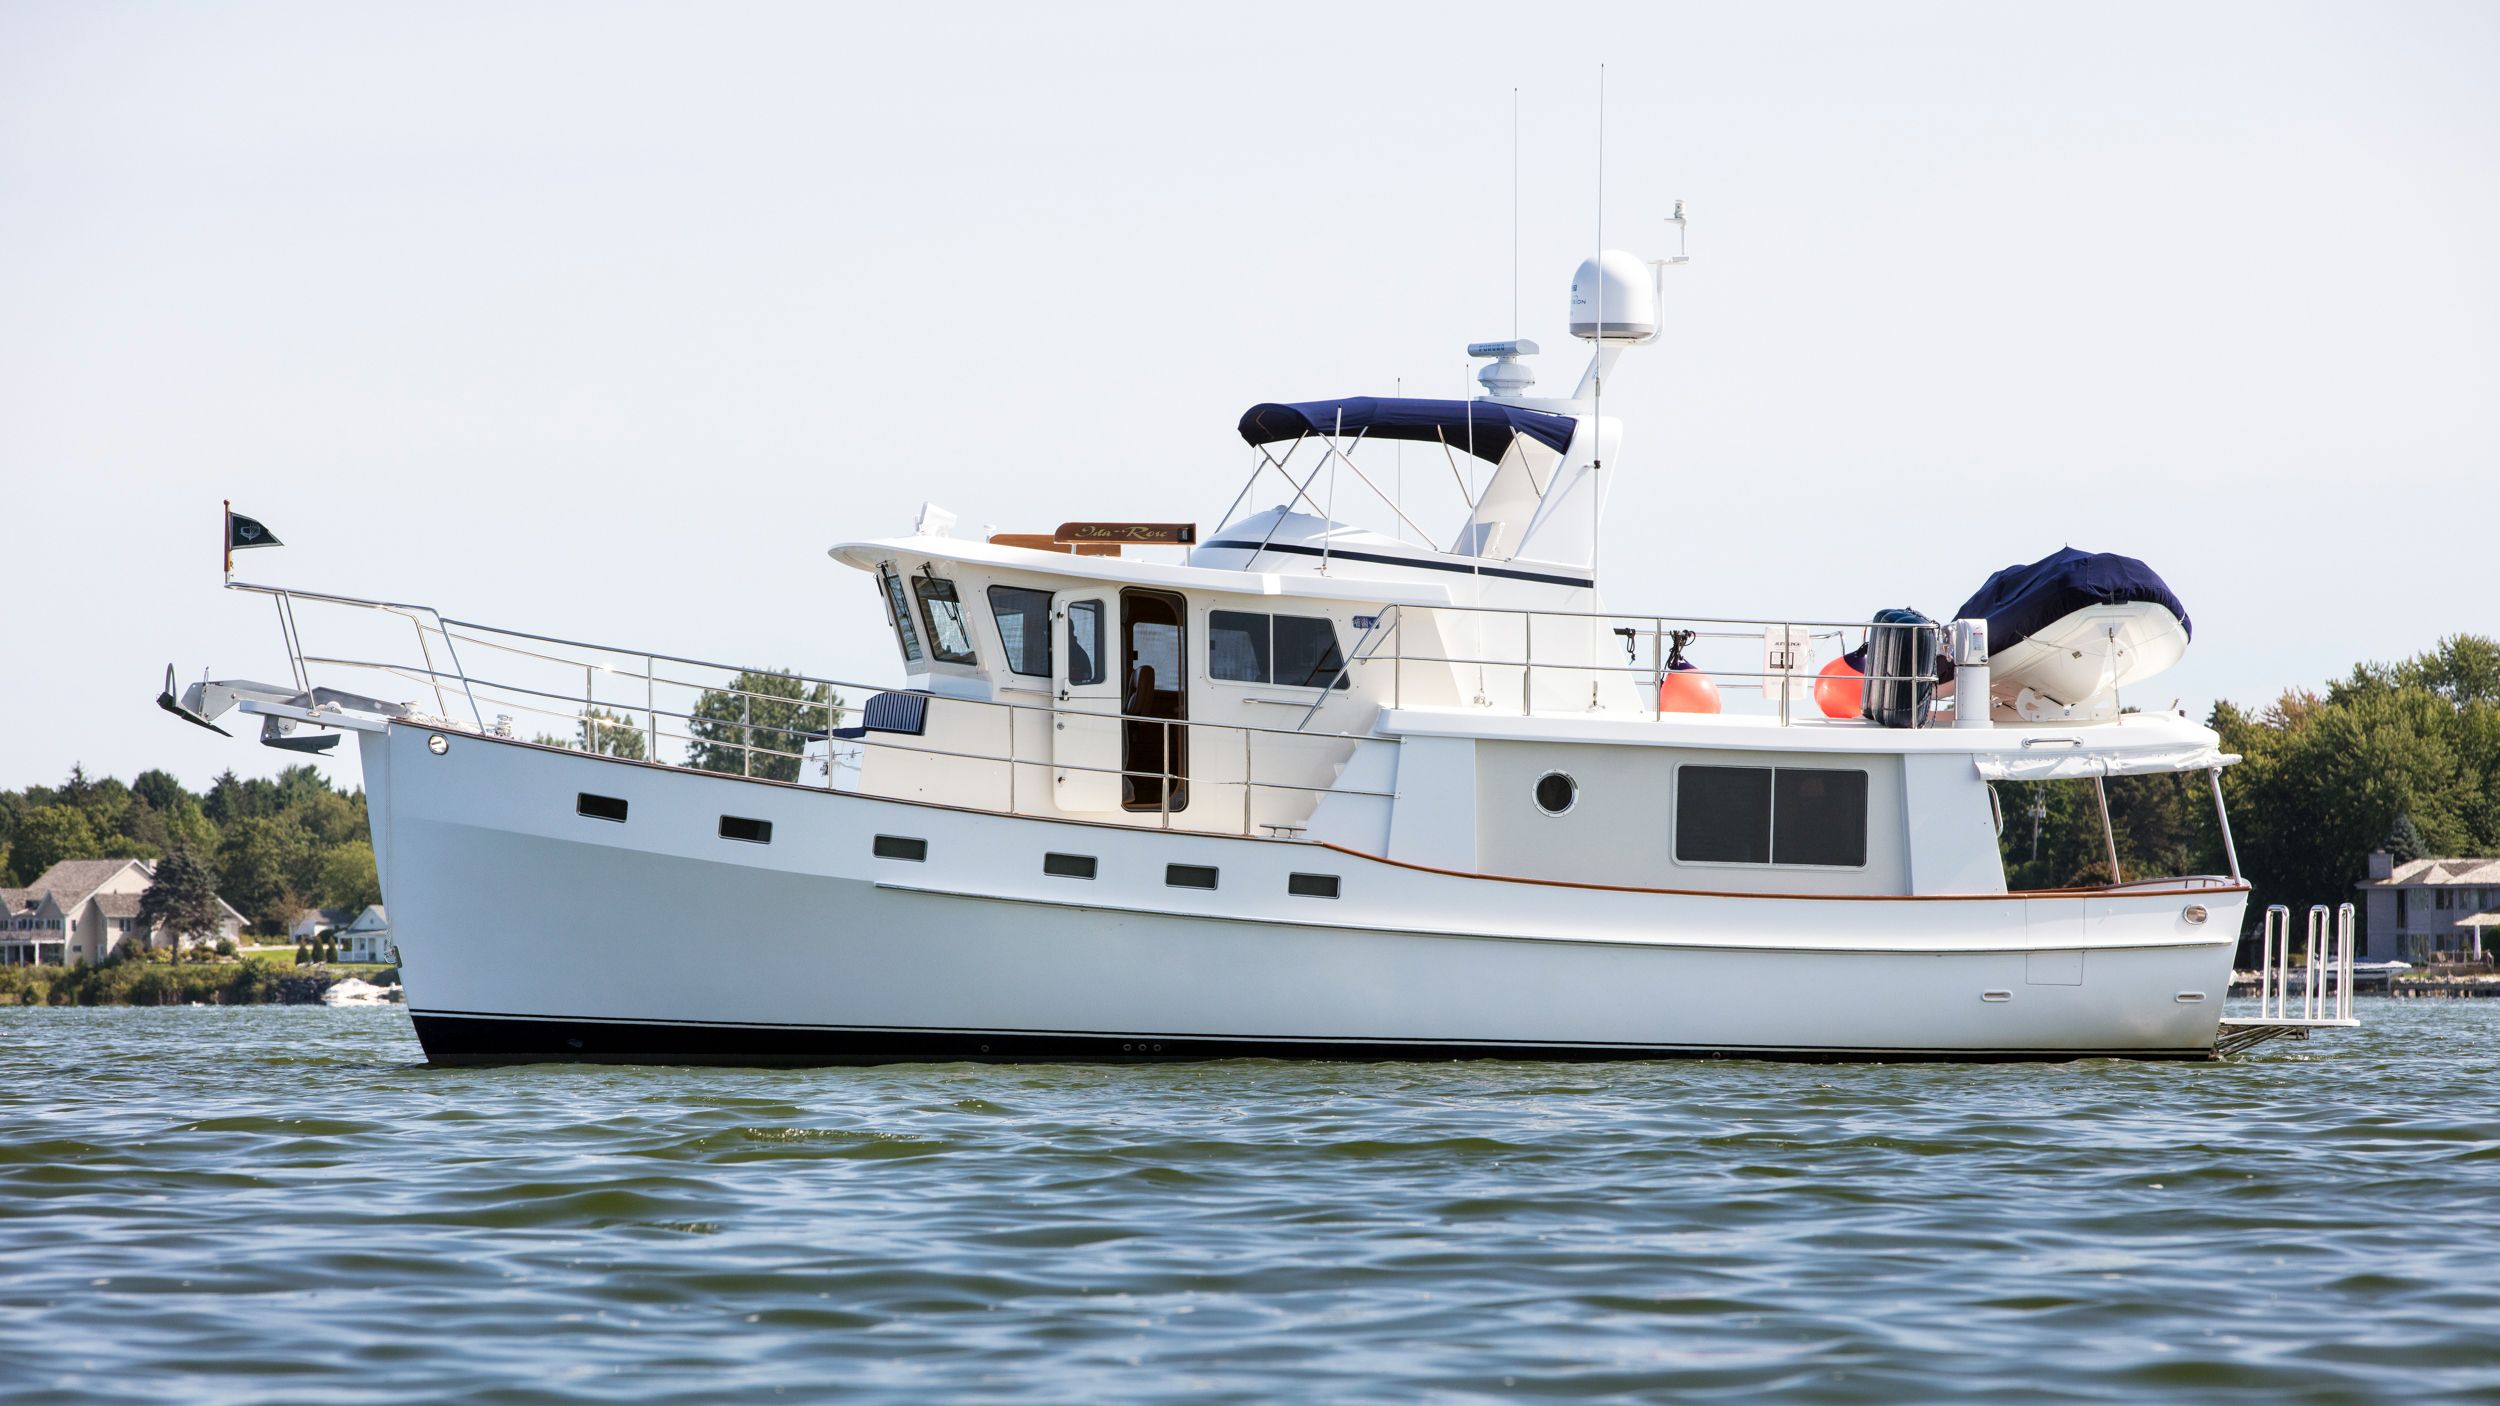 2016 kadey-krogen 48 ae power boat for sale - www